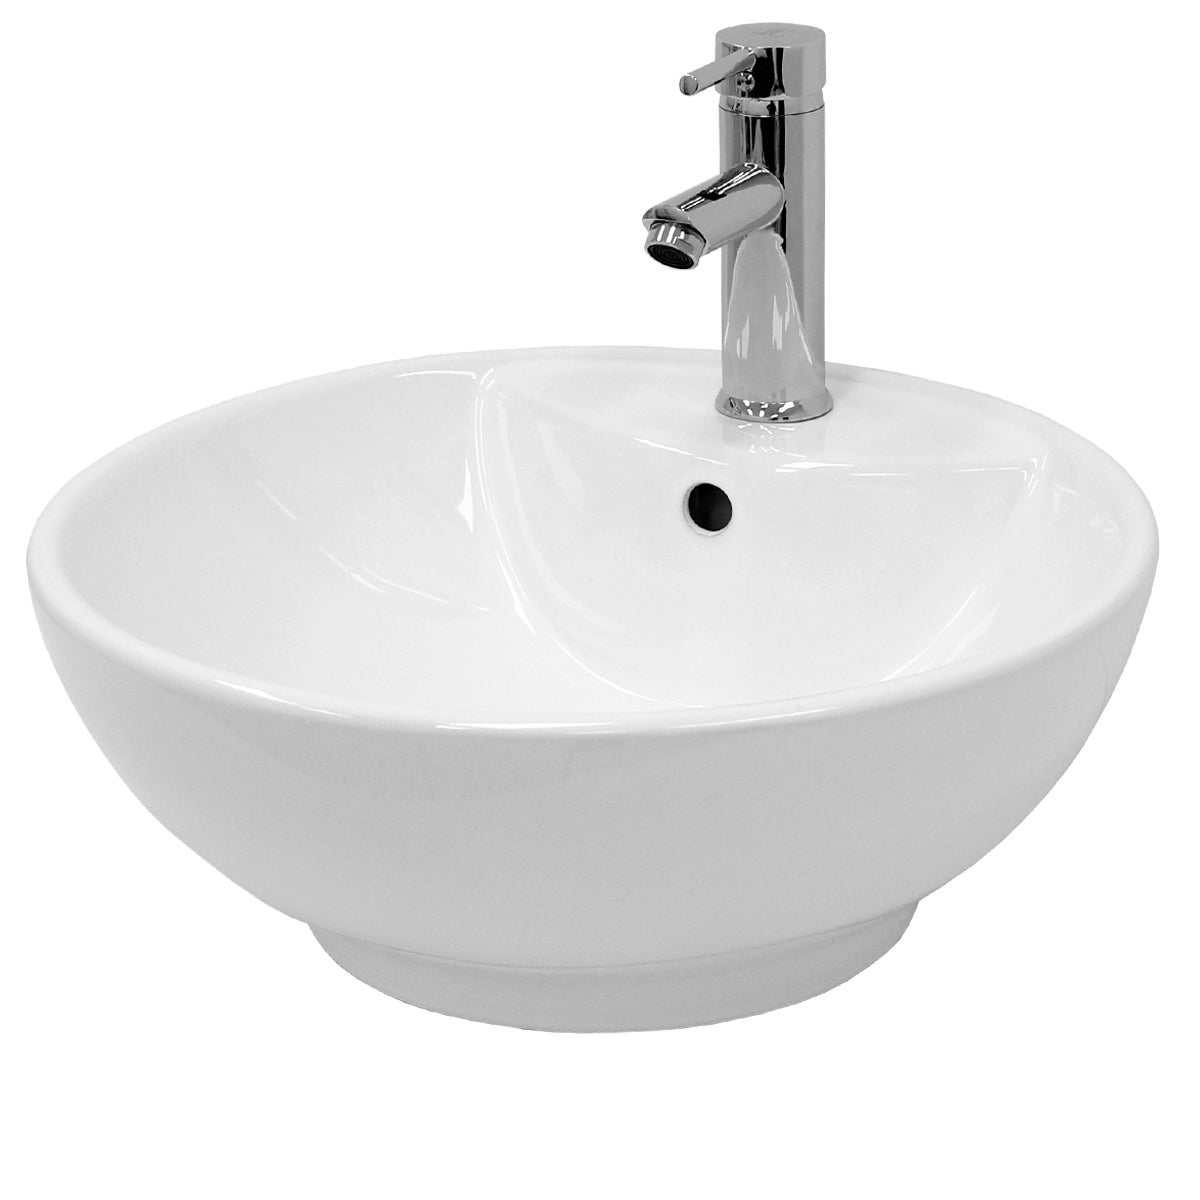 ECD Germany Design Waschbecken Waschtisch Ø 455 x 185 mm aus Keramik Rund Weiß - Aufsatzbecken Aufsatzwaschbecken Handwaschbecken Aufsatzwaschtisch Spülbecken Wasserfall Waschschale Waschschlüssel